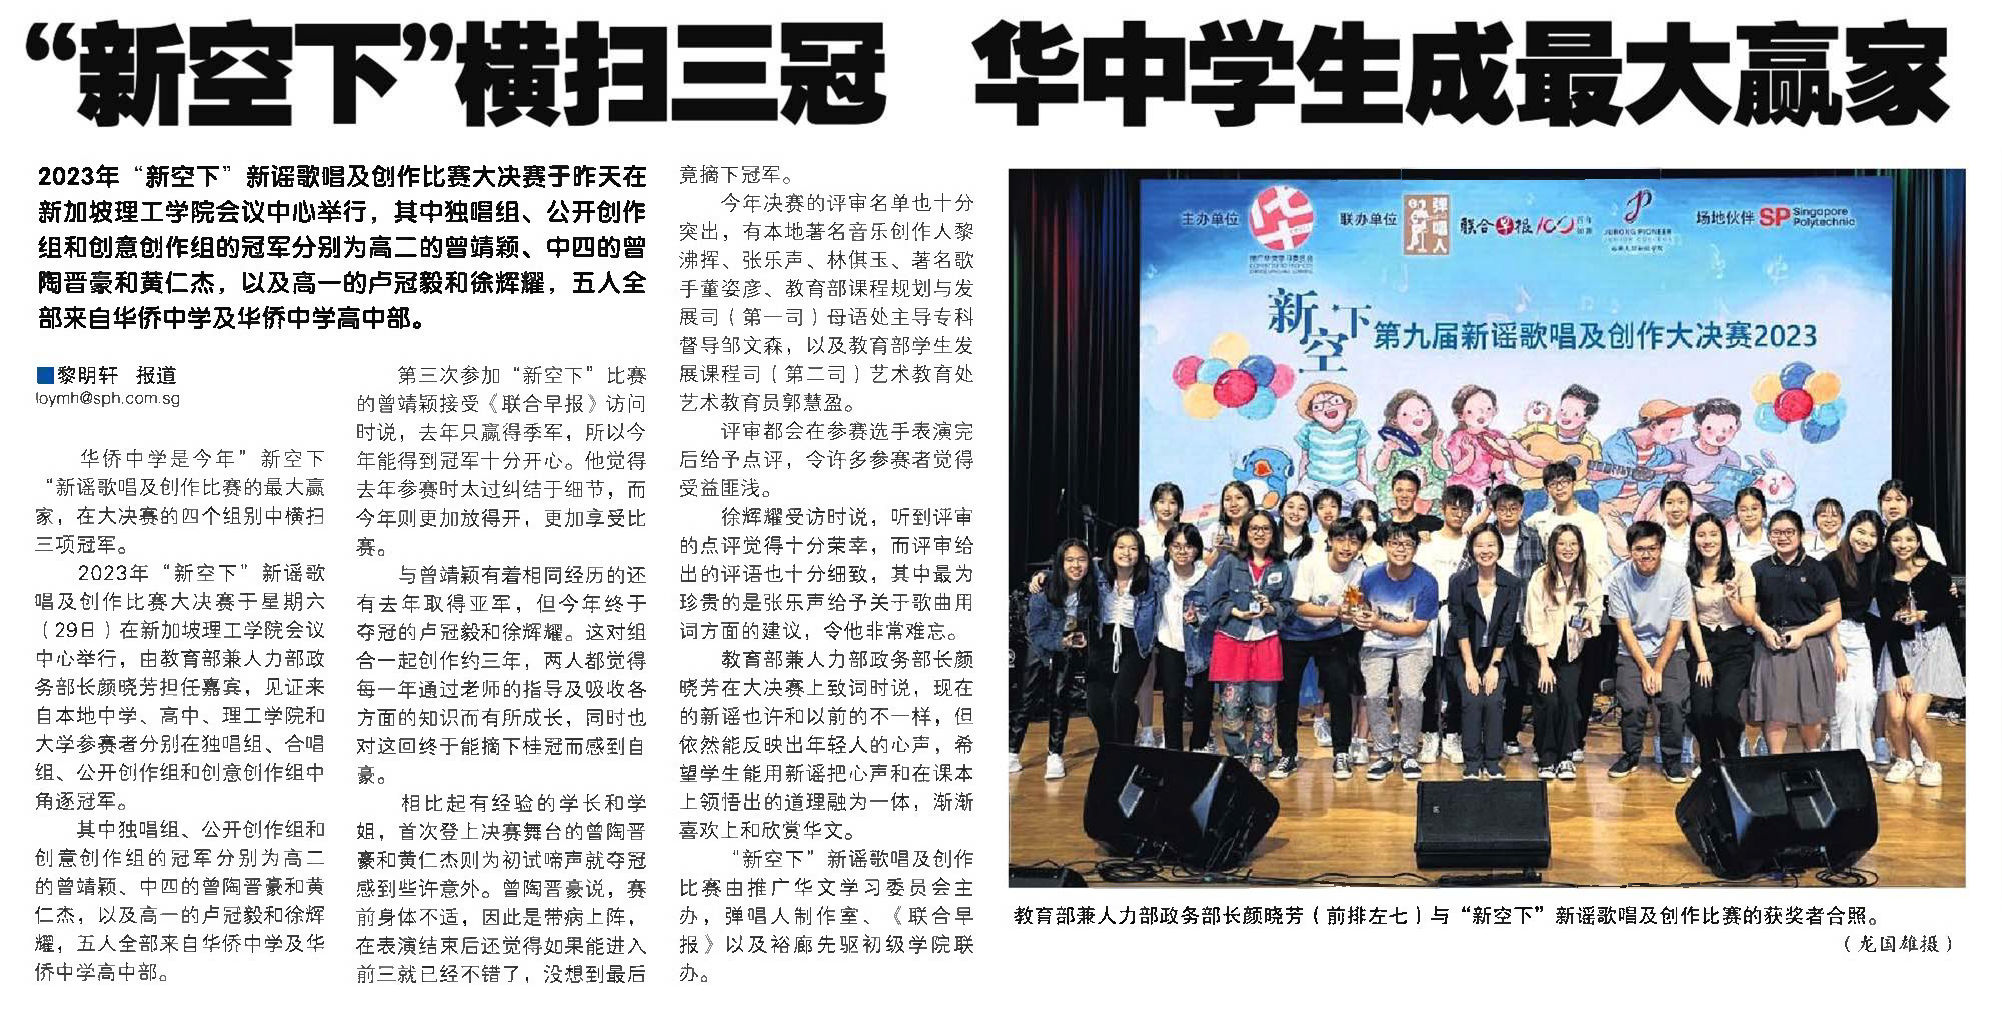 Hwa Chong students won 3 champion awards at Xinyao Competition (30 July 2023)